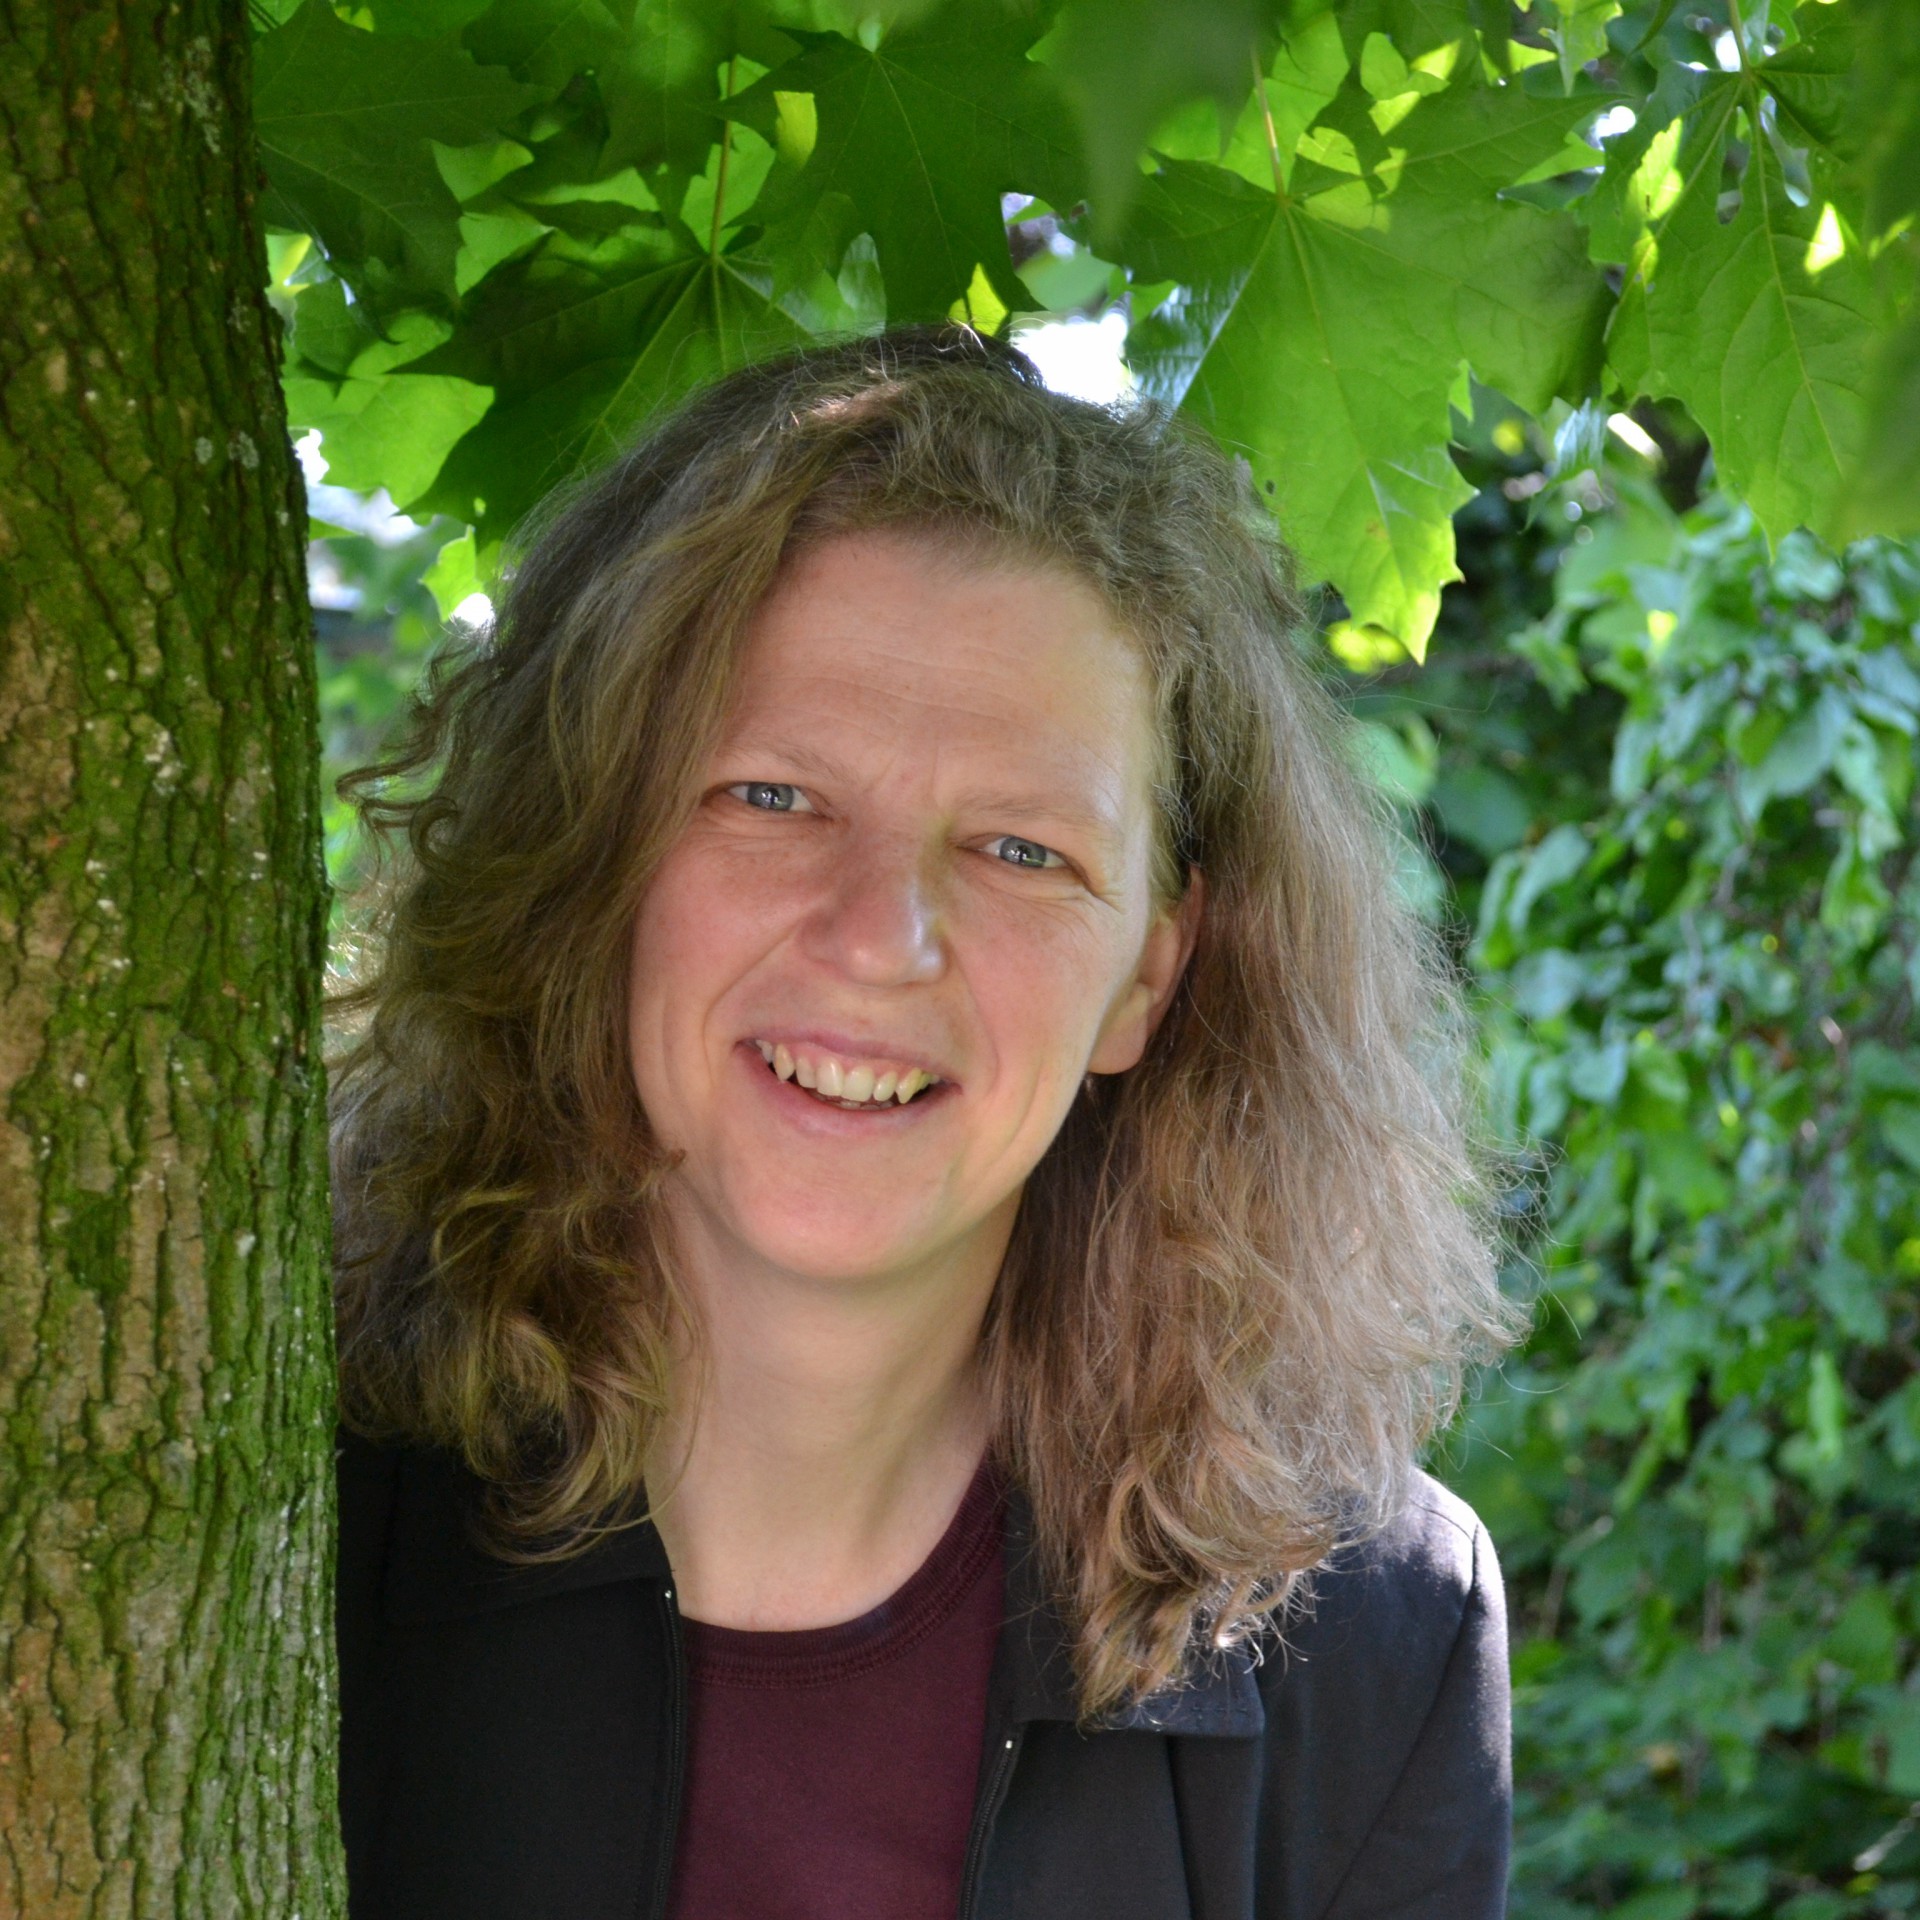 Susanne Schubert